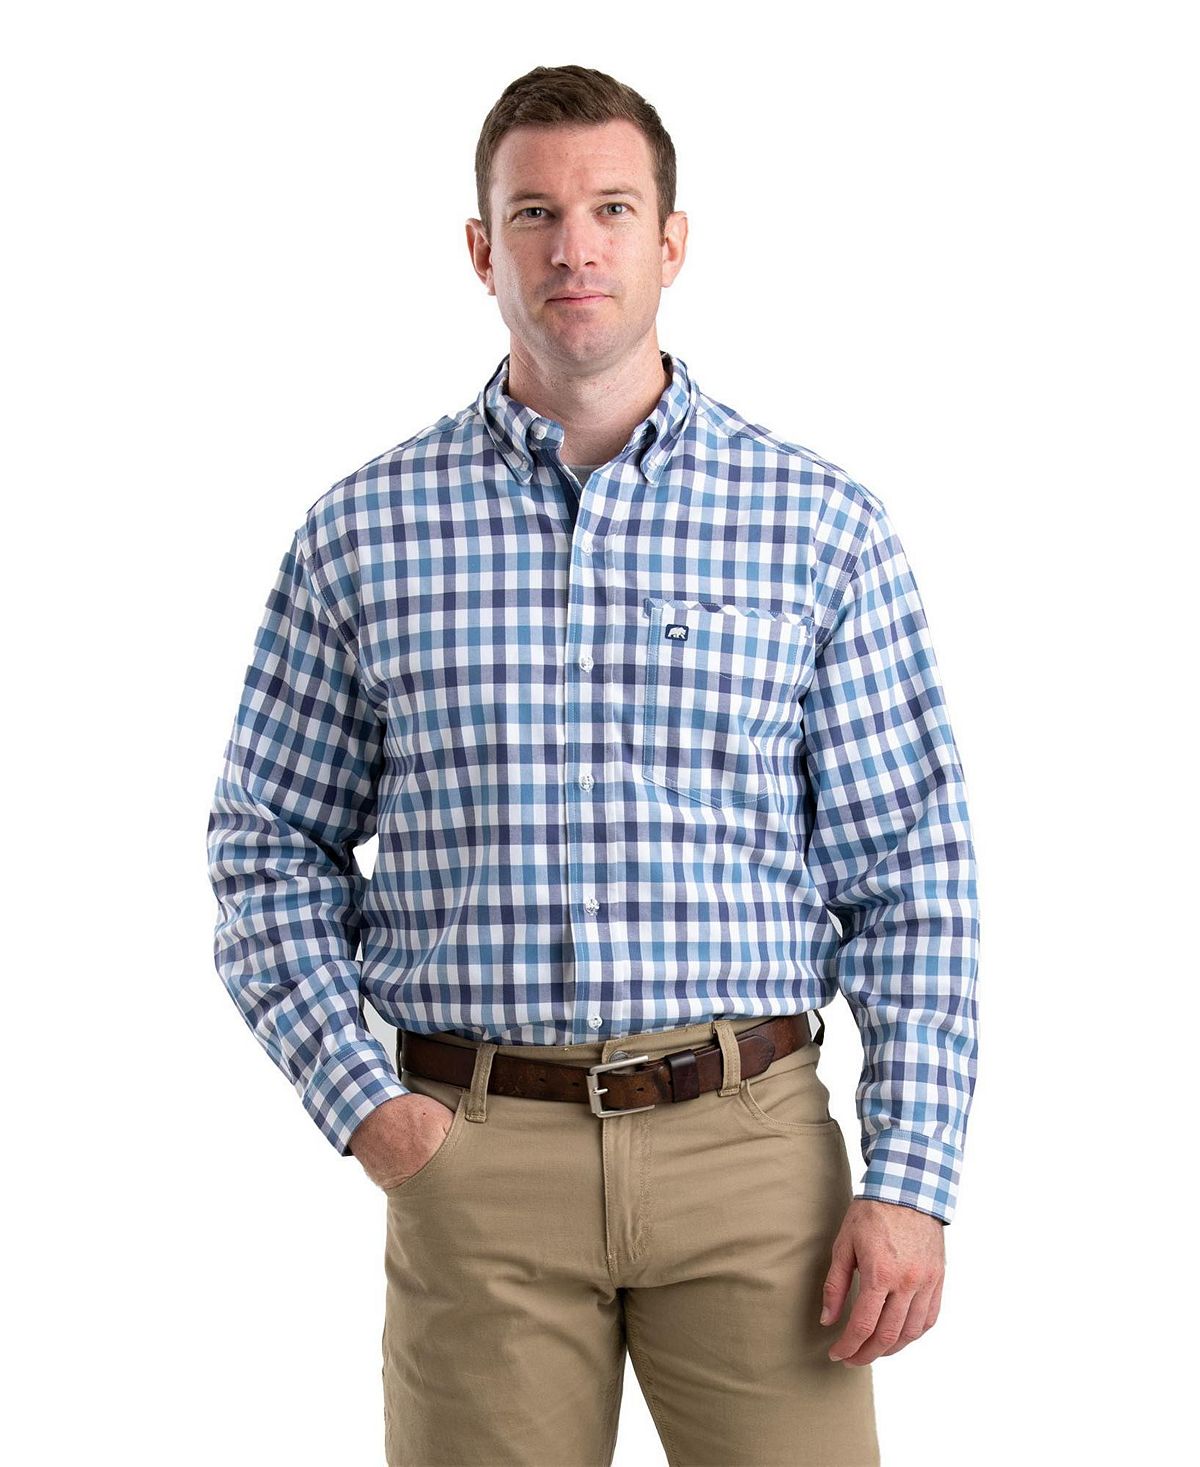 Мужская рубашка на пуговицах с длинным рукавом Foreman Flex, большая и высокая Berne 2x 9005 светодиодные фары 6000k лампы для honda foreman 500 trx500fm 2005 2019 foreman 450 500 4x4 02 04 05 14